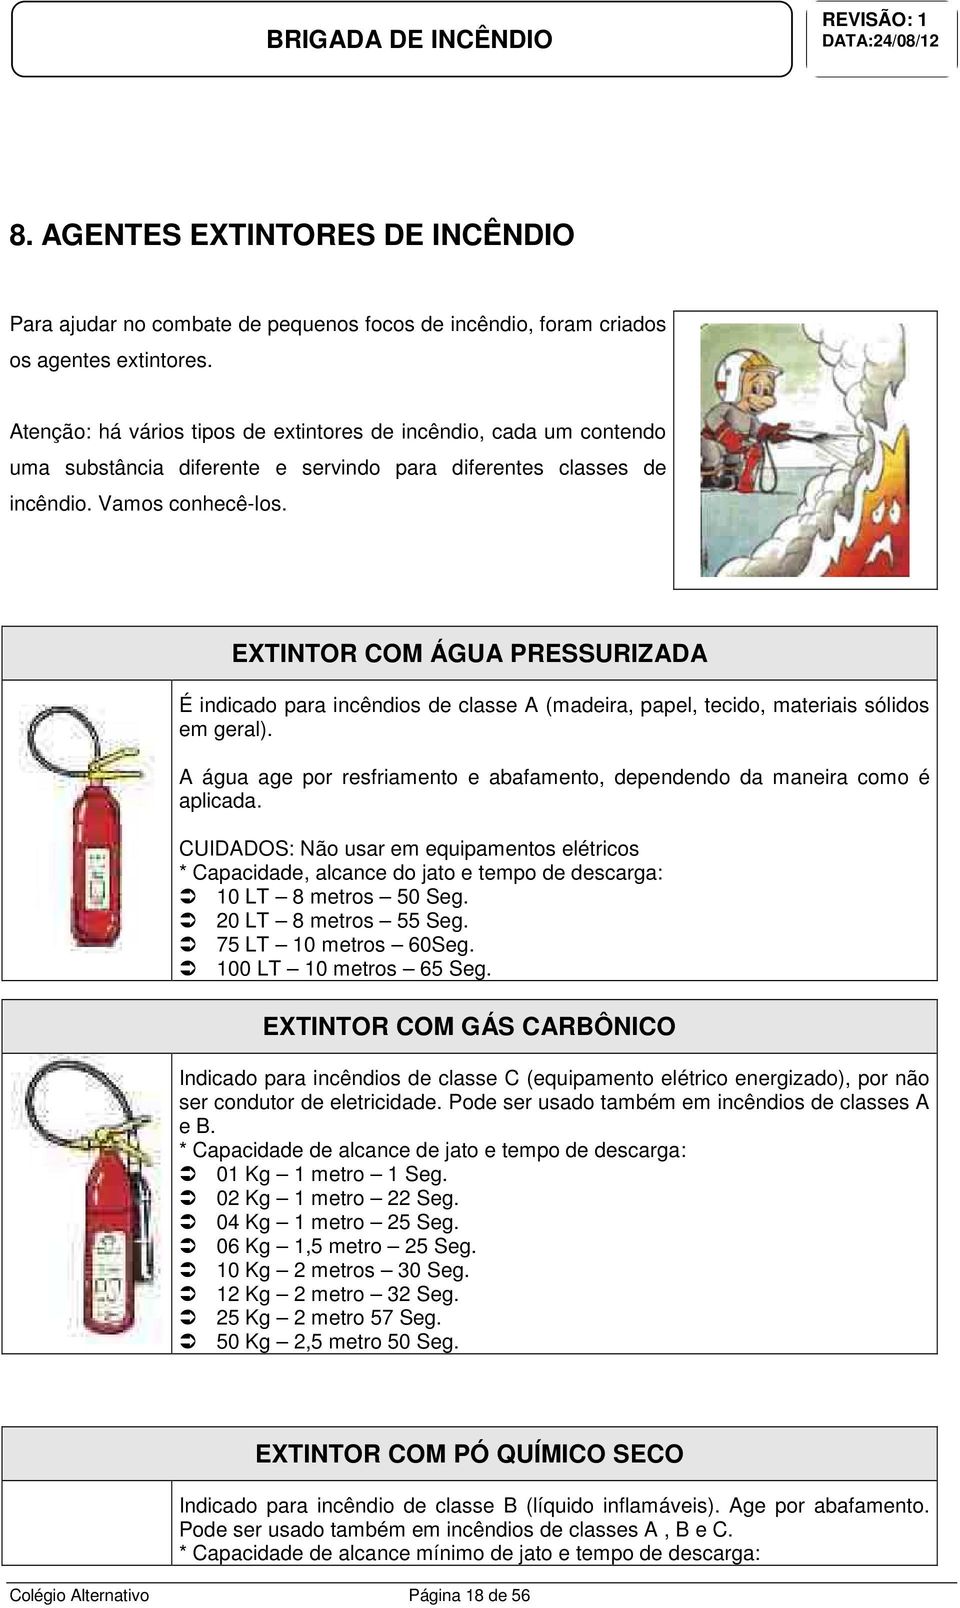 EXTINTOR COM ÁGUA PRESSURIZADA É indicado para incêndios de classe A (madeira, papel, tecido, materiais sólidos em geral).